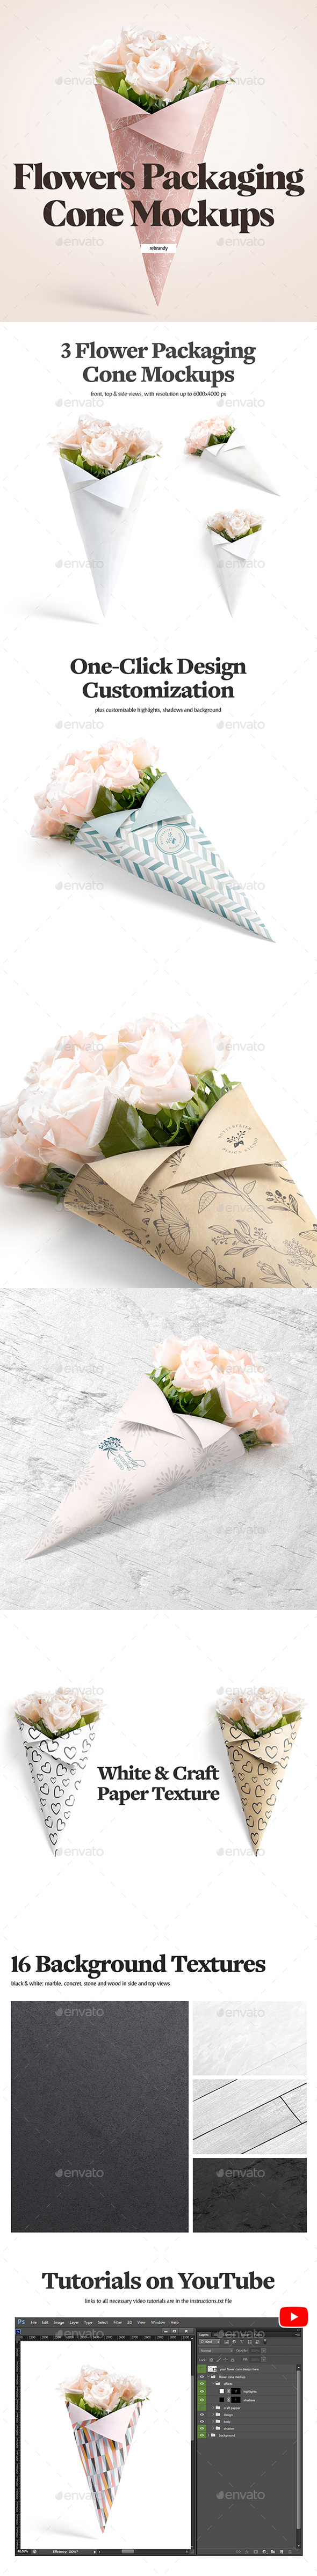 Flowers Packaging Cone Mockups